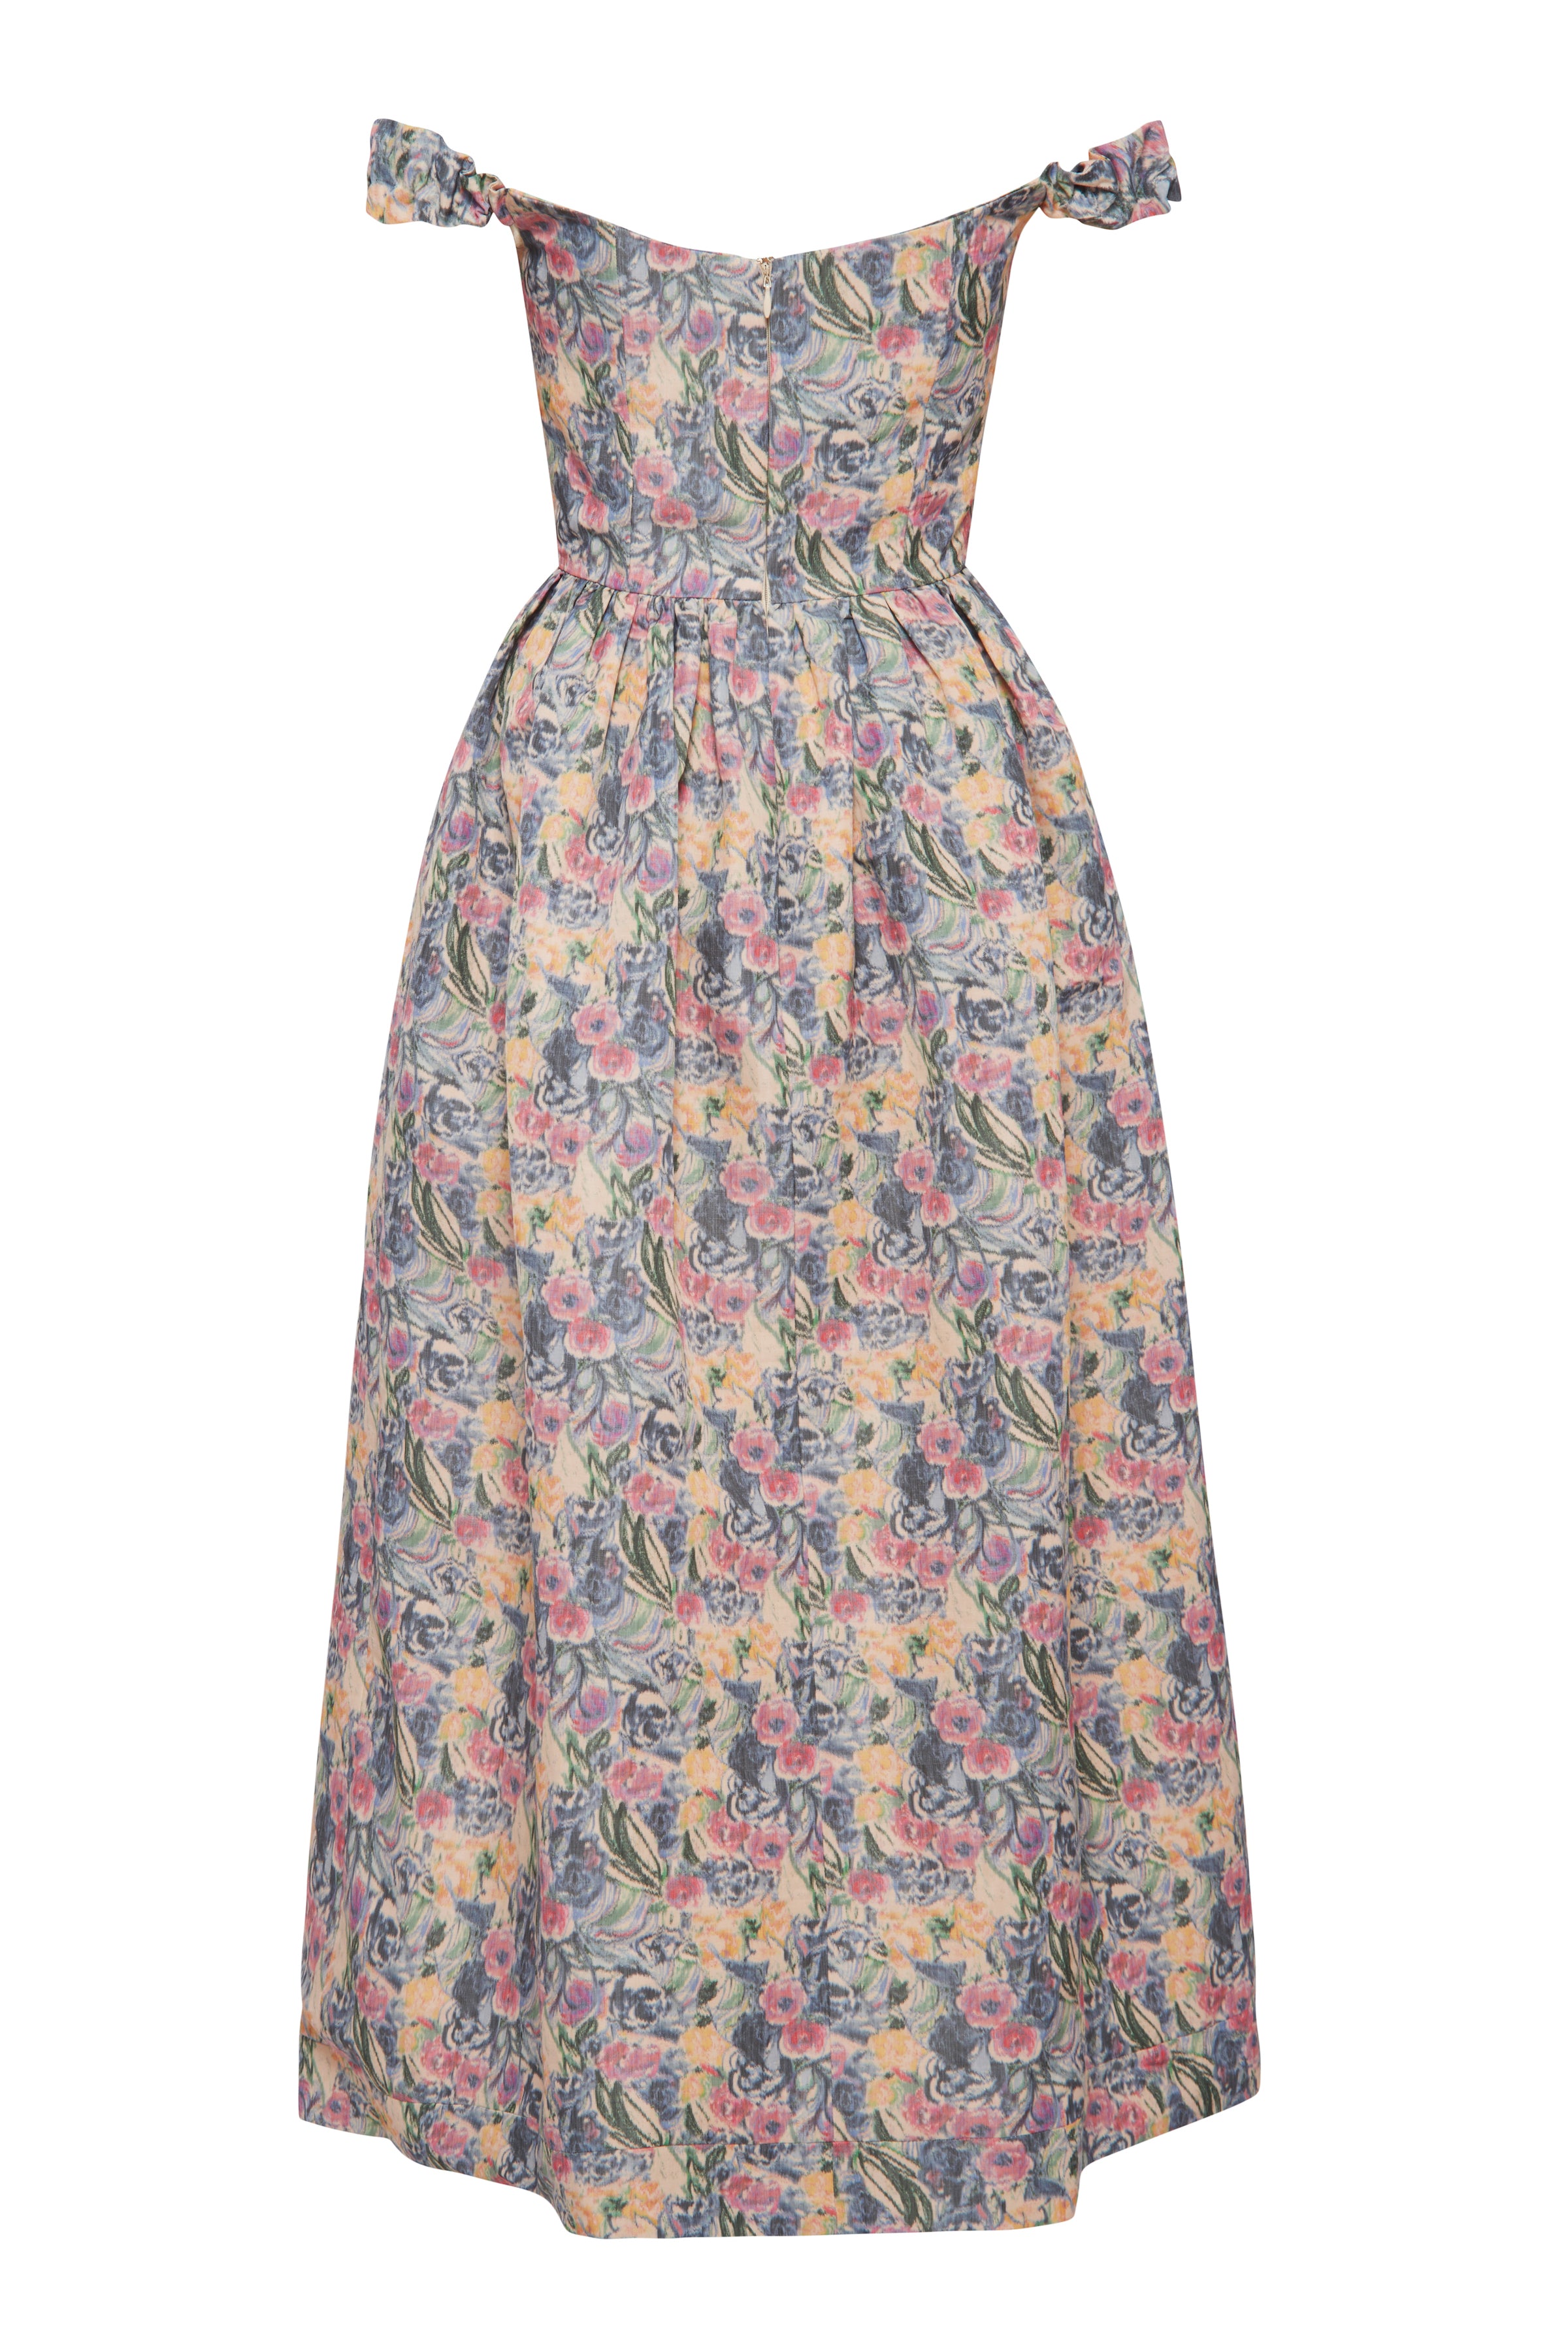 Vintage Floral Draped Corset Dress - XS / Floral